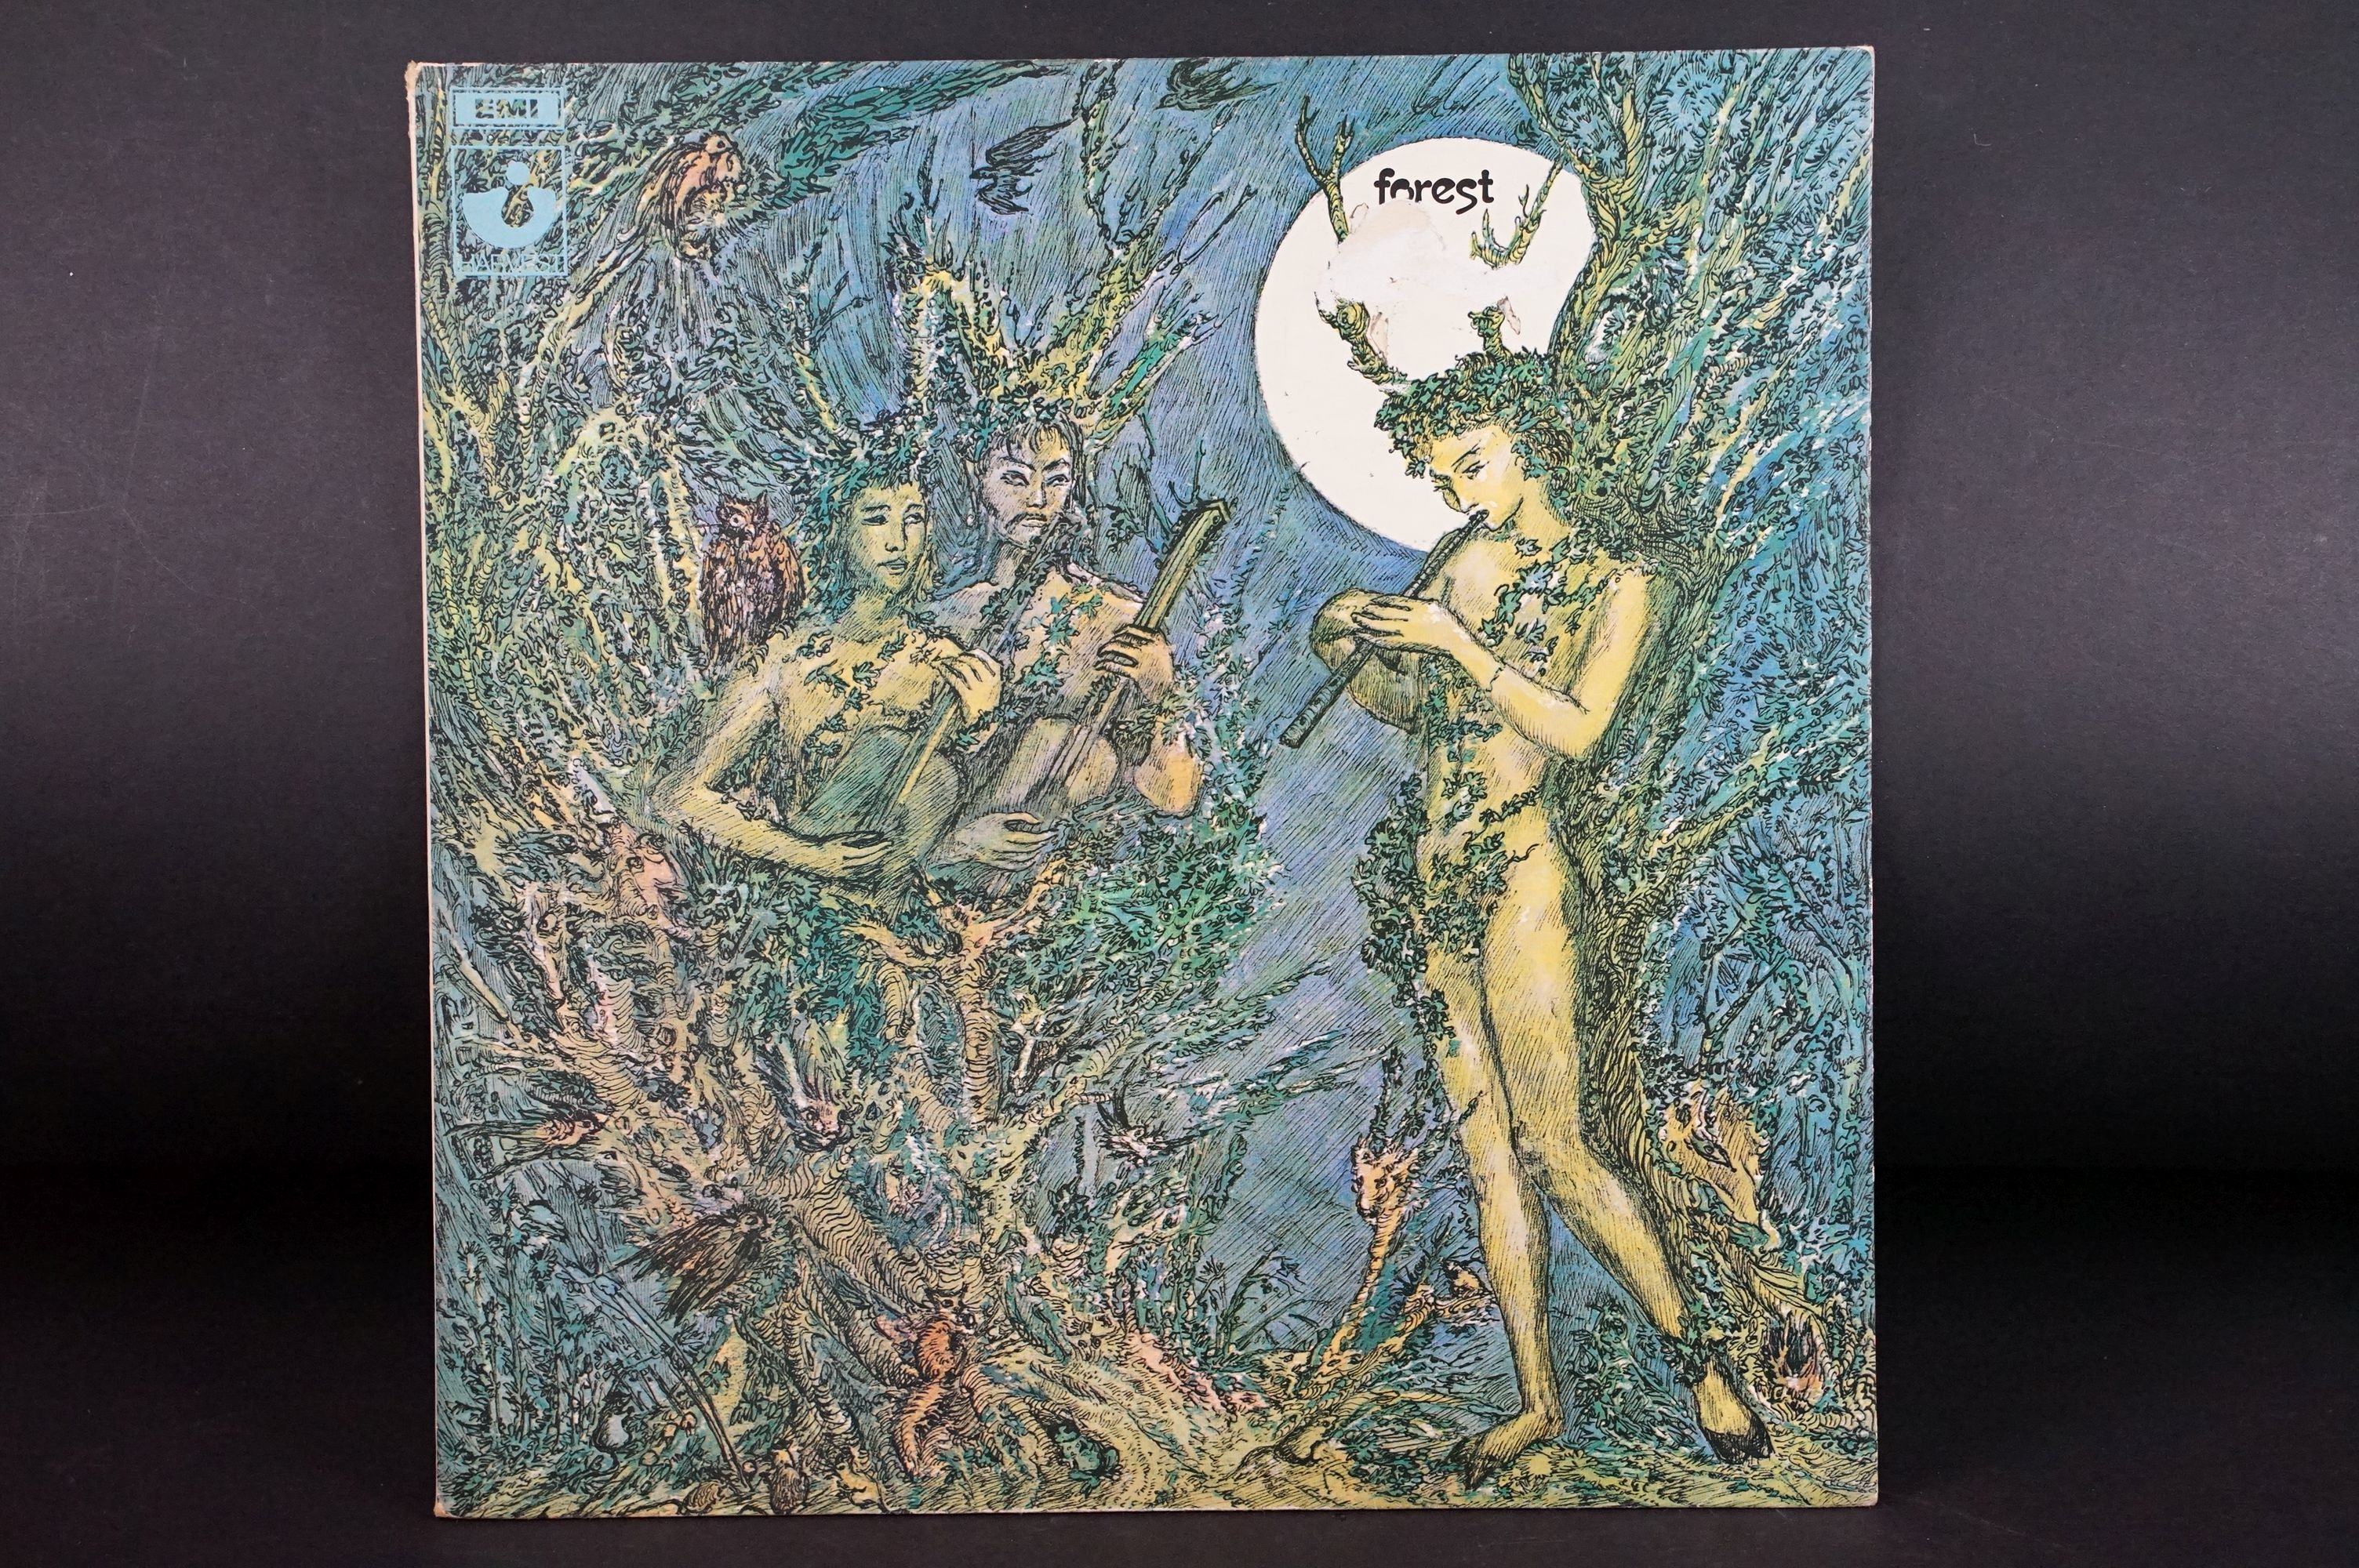 Vinyl - Forest self titled LP on Harvest Records SHVL 760. Original UK 1st pressing, no EMI on